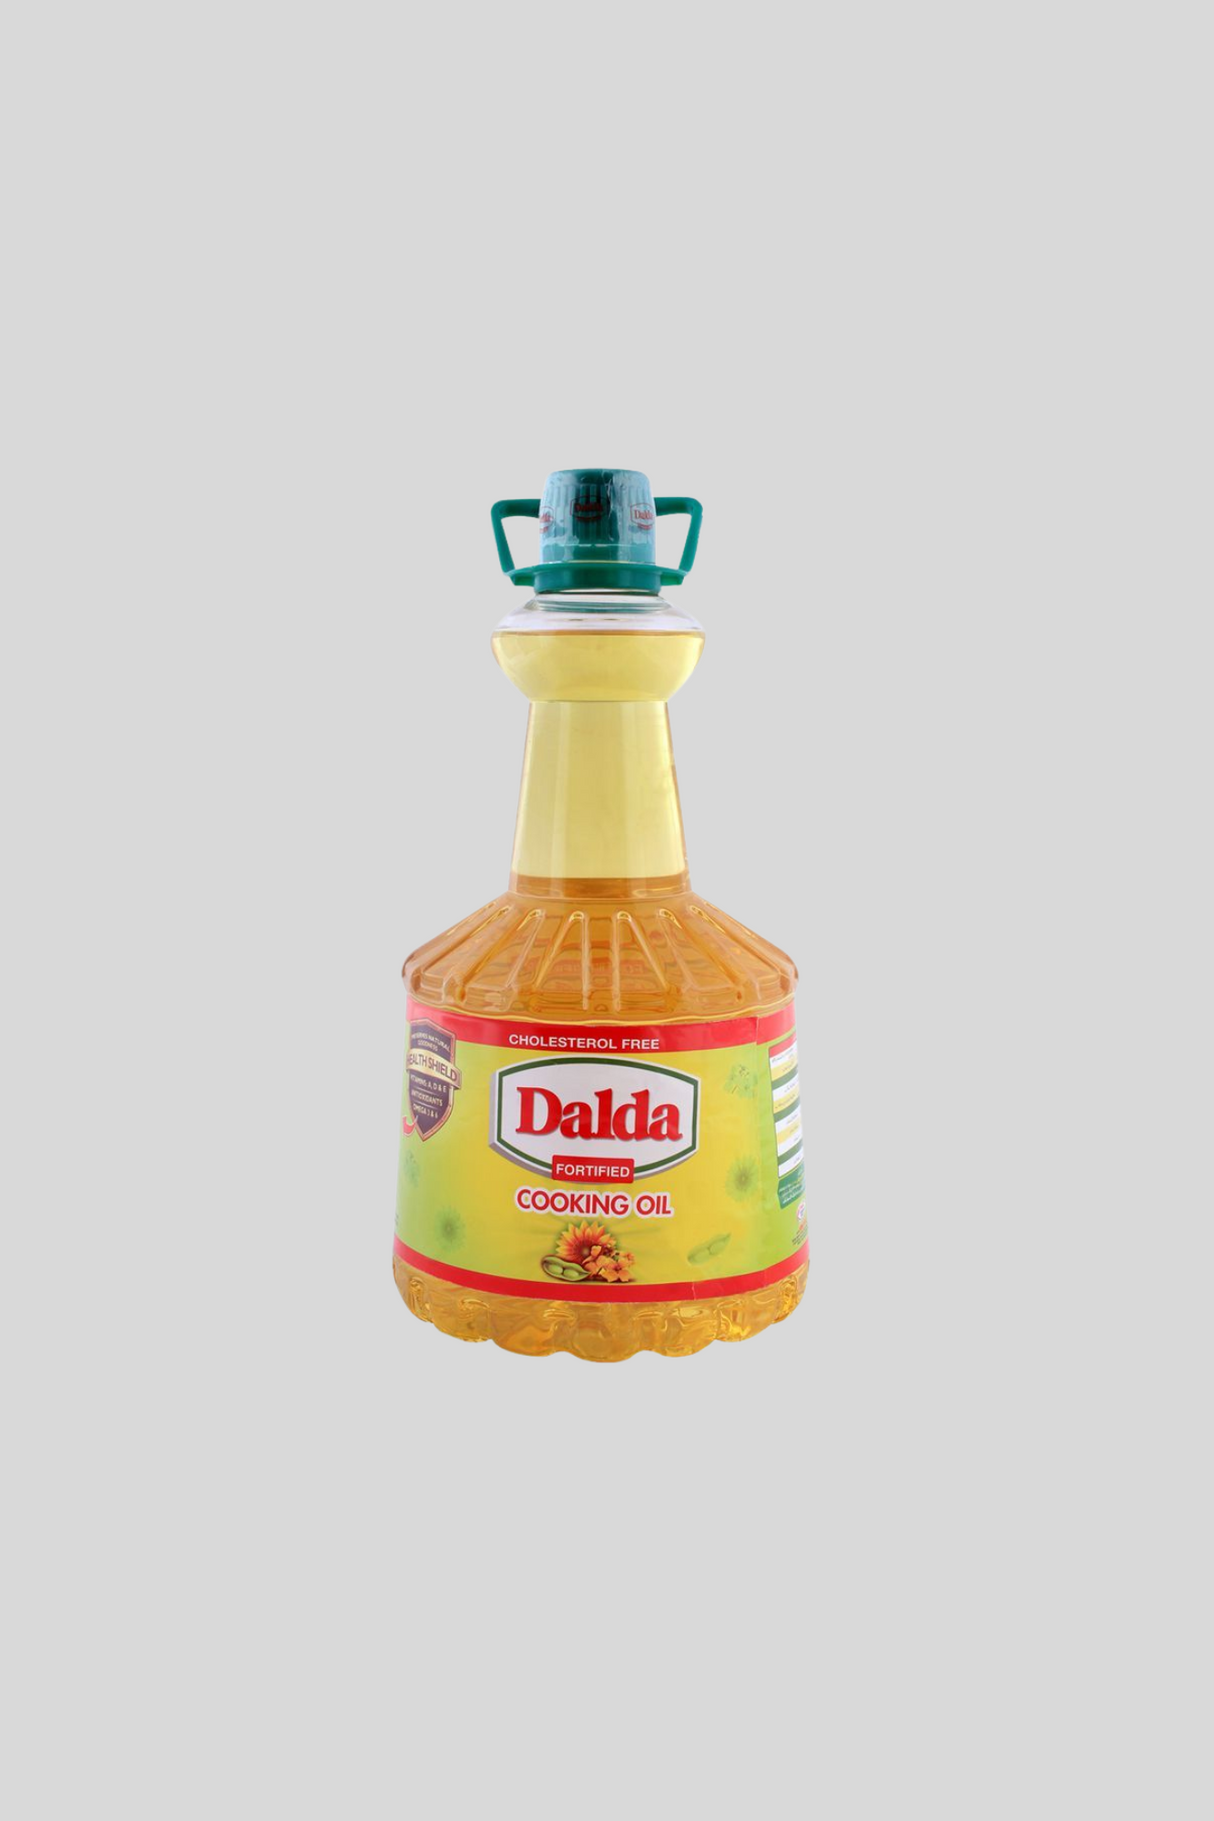 dalda cooking oil 4.5l bottle